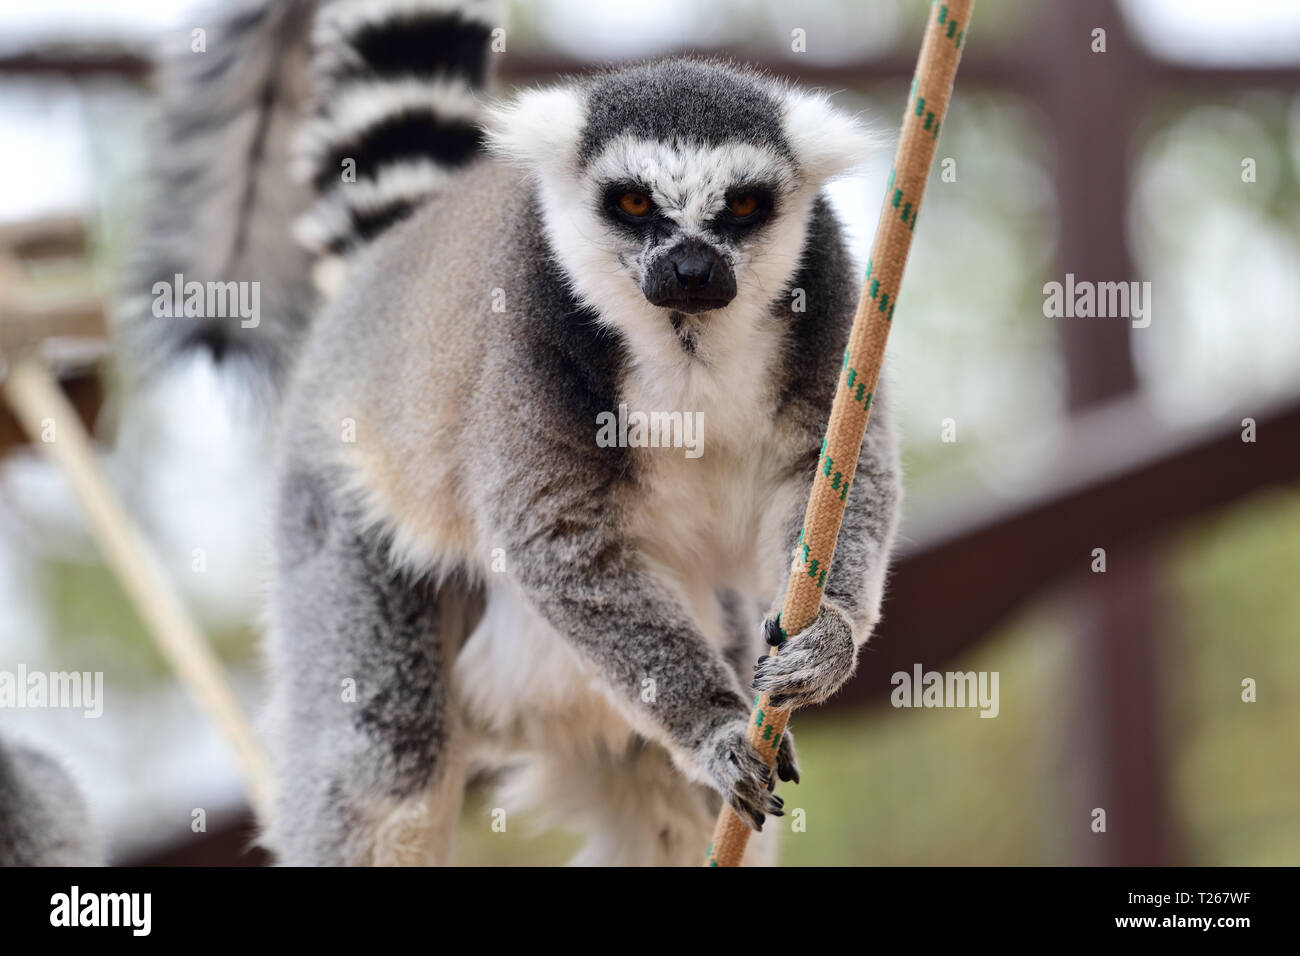 Porträt eines Ring tailed Lemur (Lemur catta) Klettern an einem Seil in einem Zoo Gehäuse Stockfoto